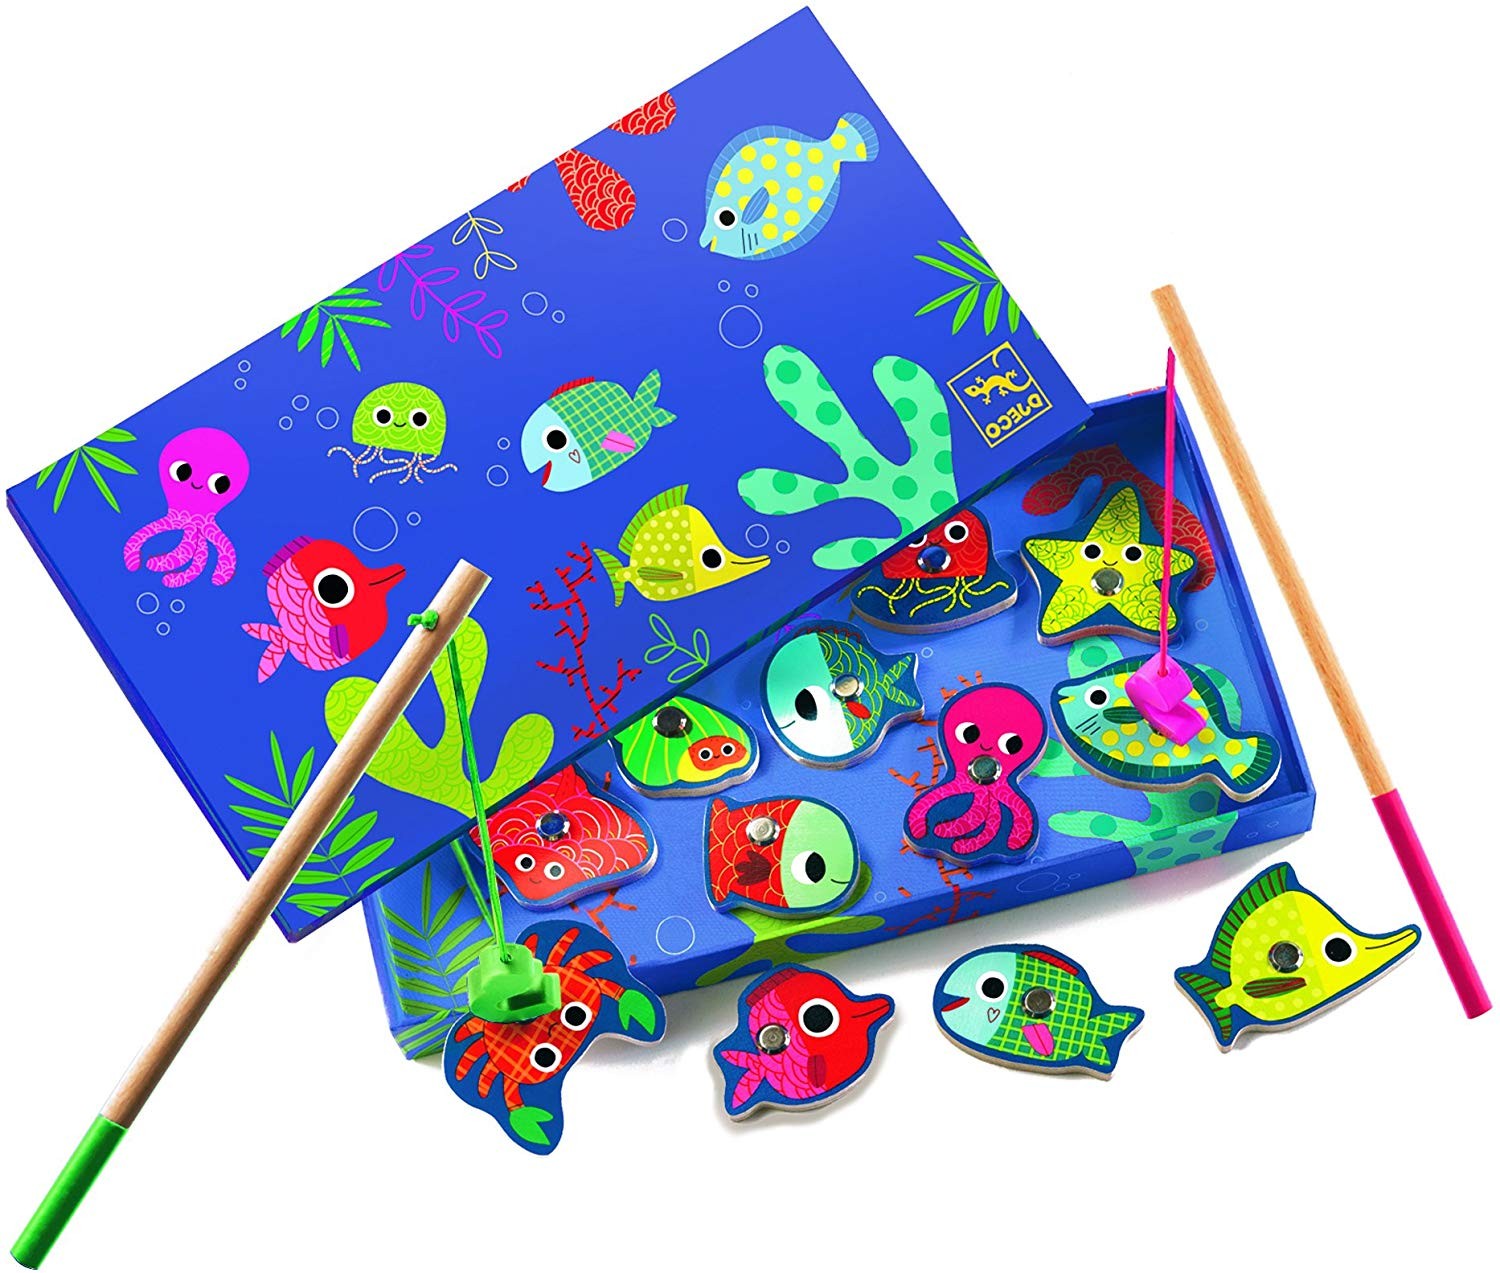 Présentation du jeu La Pêche Aimantée - Fishing Colour offert chez LilloJEUX